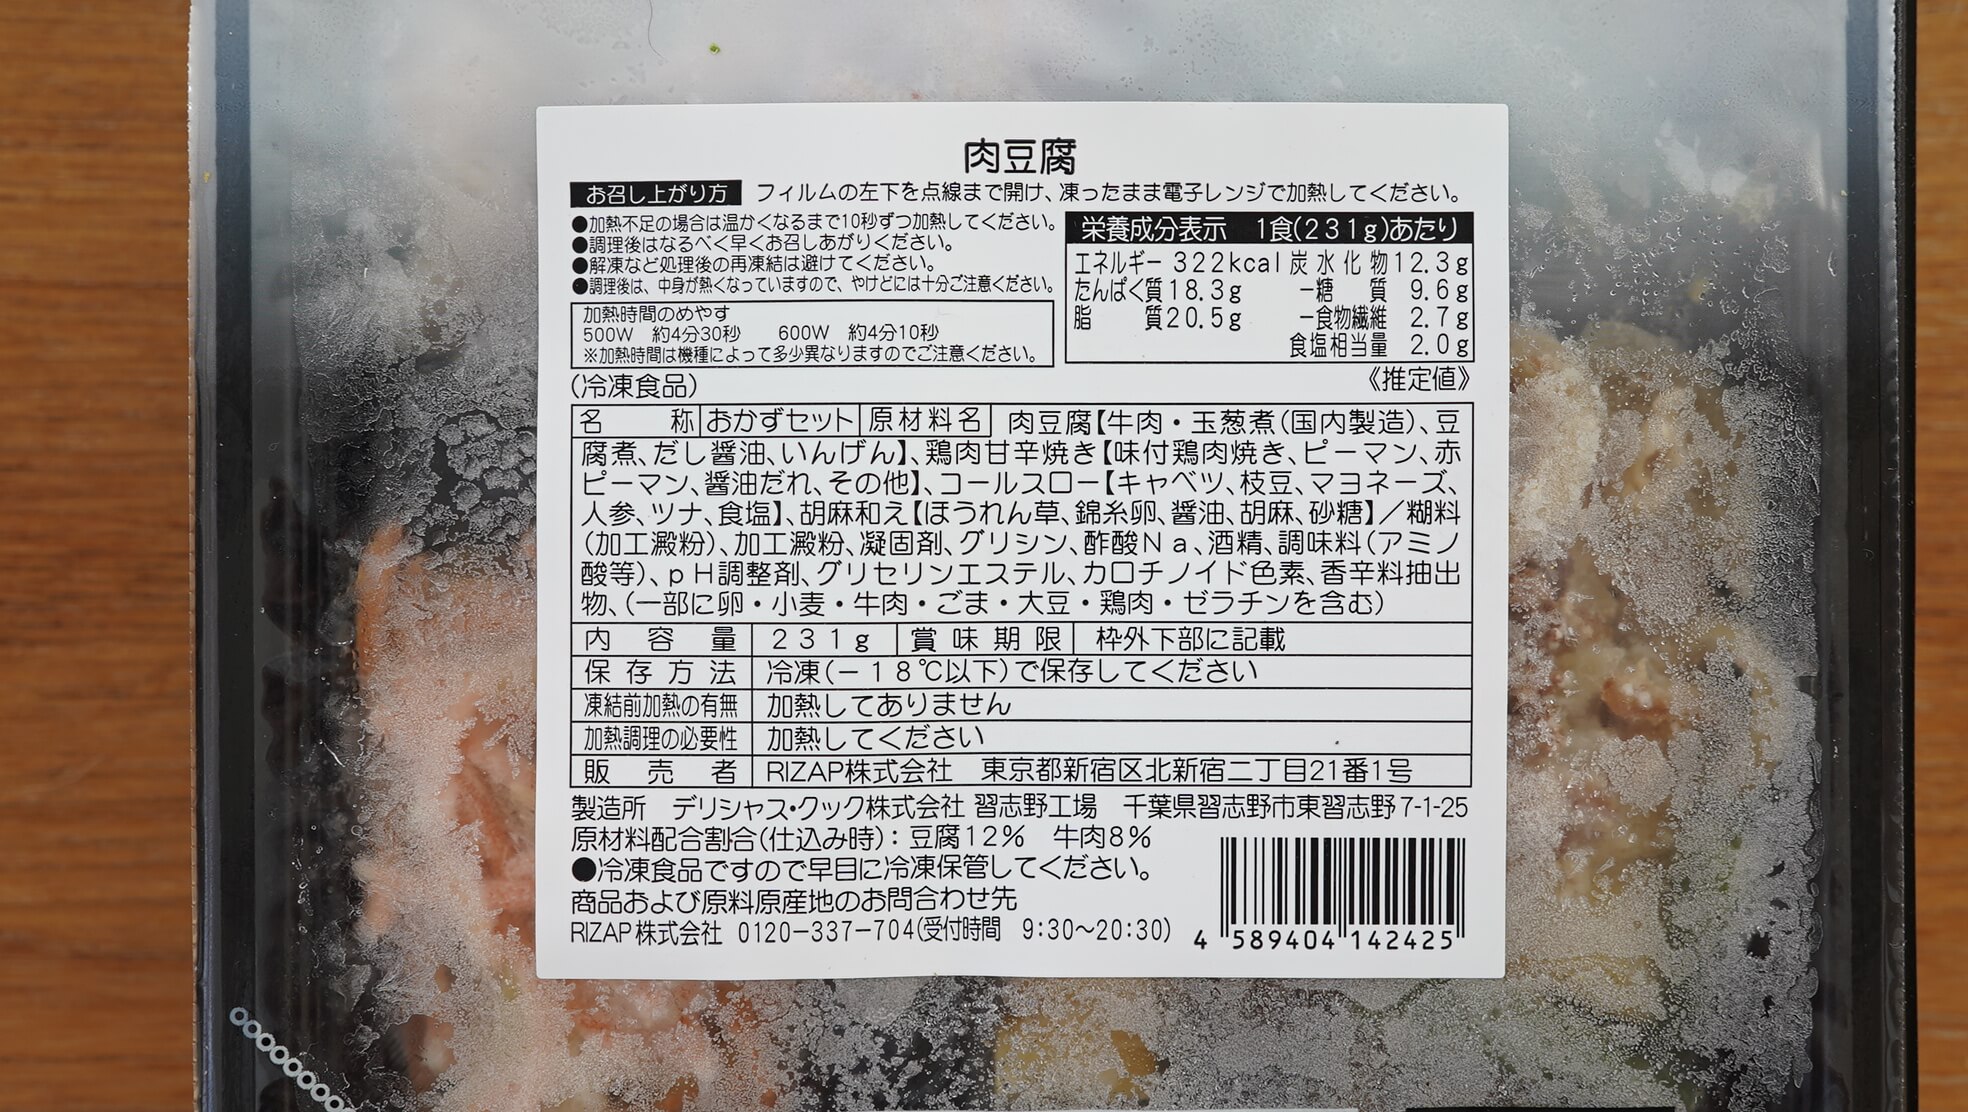 ライザップの冷凍弁当・サポートミール「肉豆腐」の栄養成分表の写真